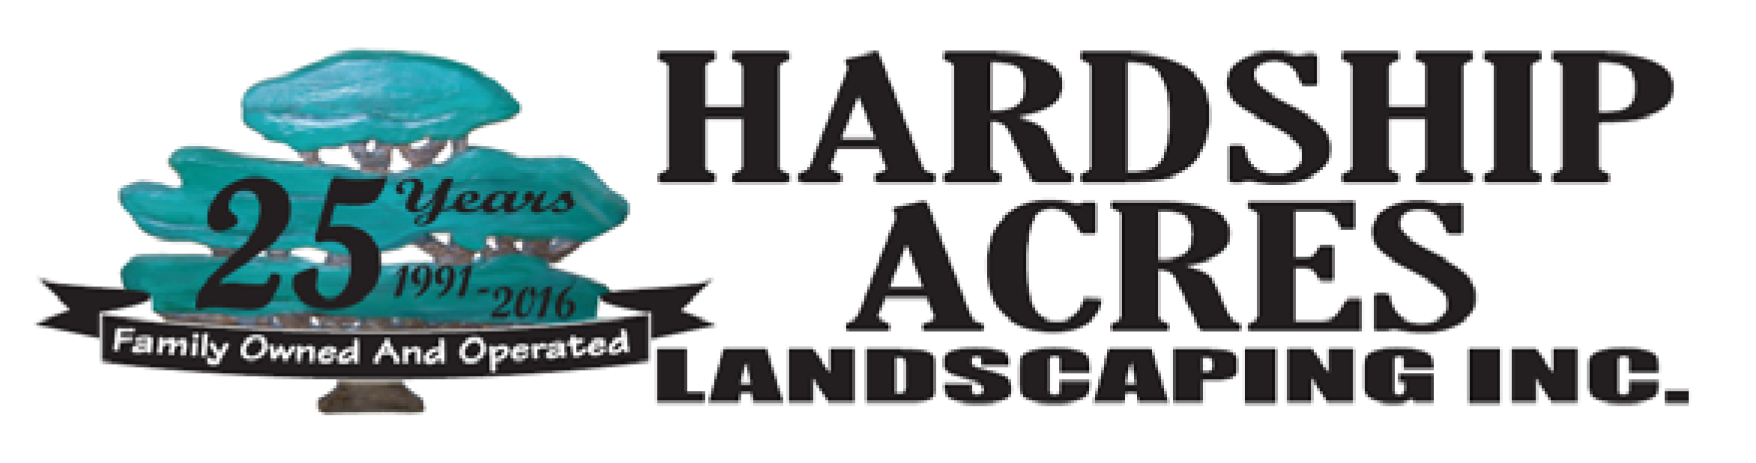 Hardship Acres Landscaping Inc.